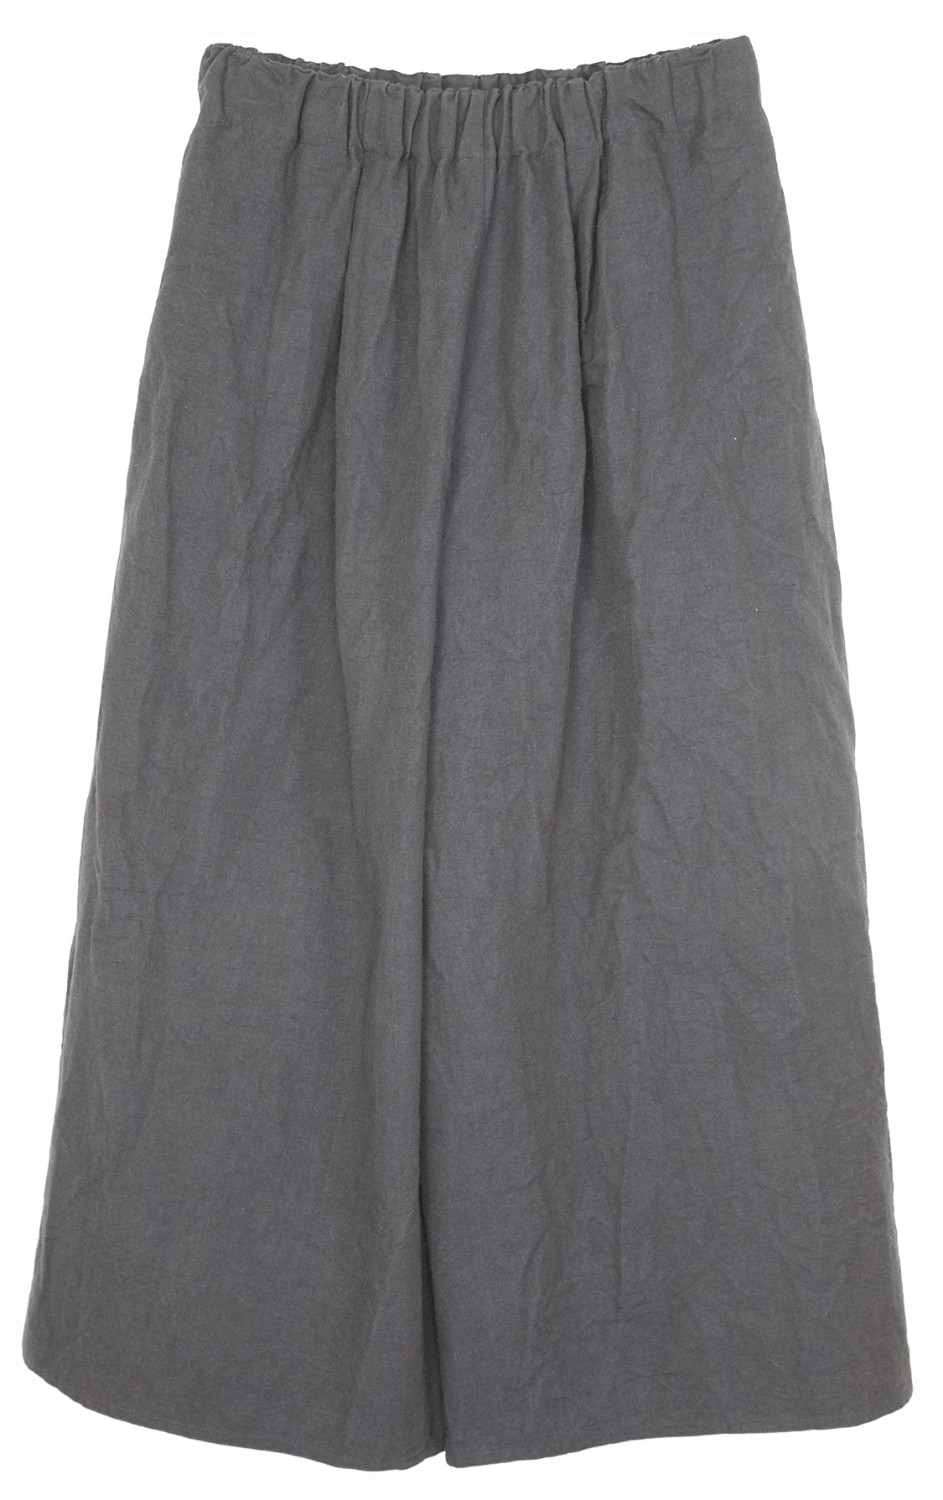 shop Dusan Saldi Pantaloni: Pantalone Dusan, color sabbia, in cotone e lino, elastico in vita, lunghezza fino alle caviglie.

Composizione: 50% cotone, 50% lino. number 1186